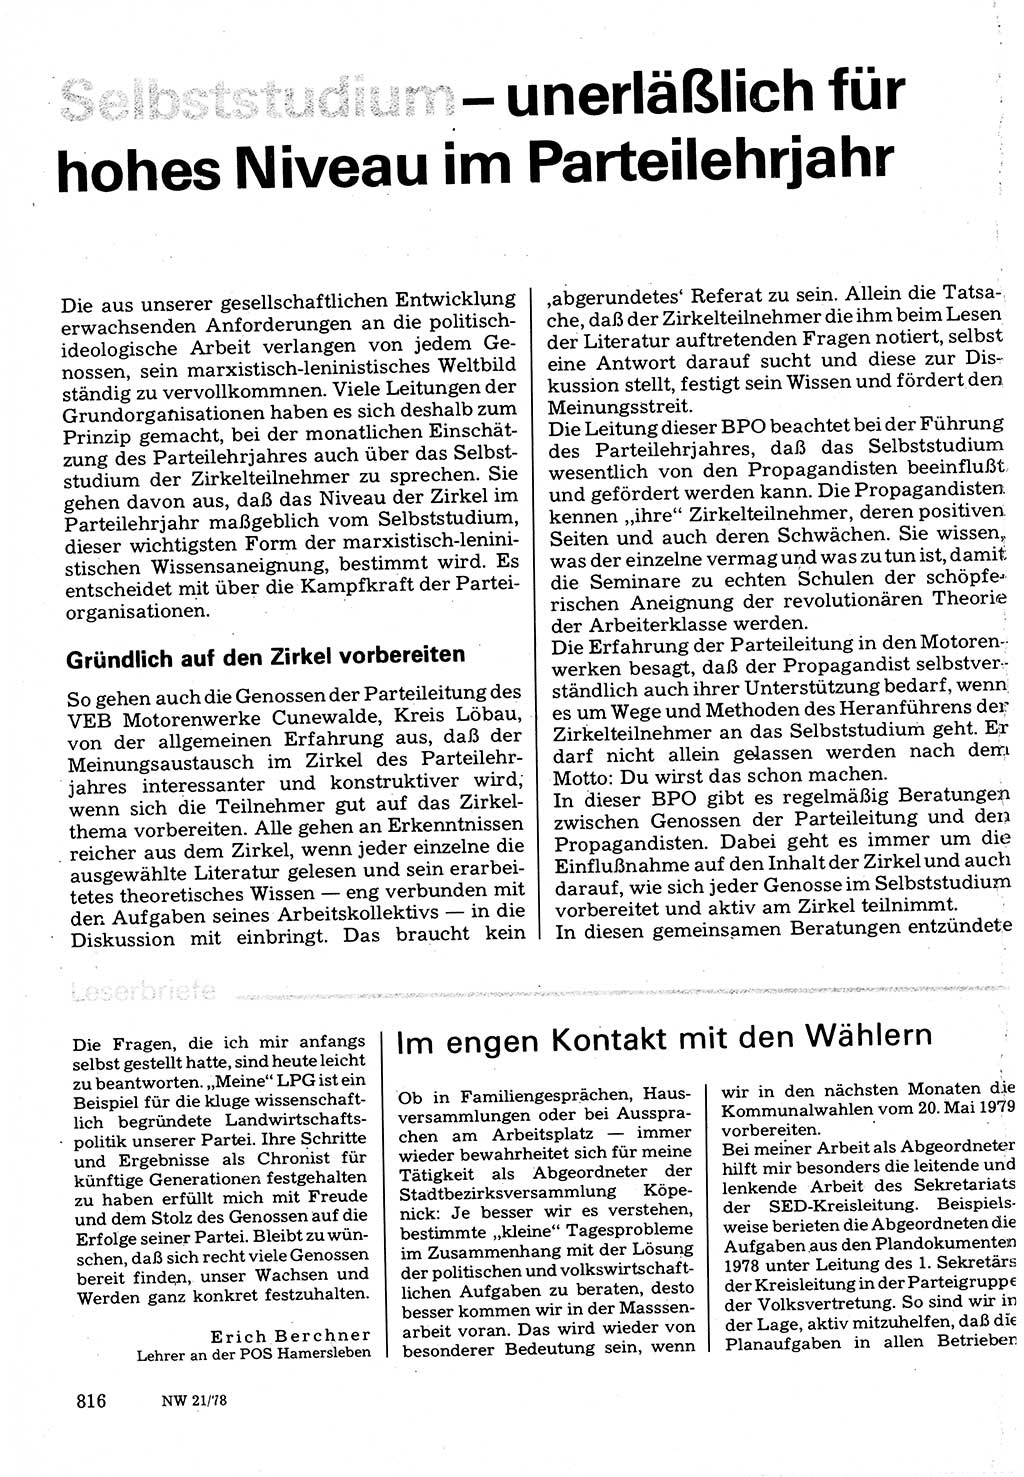 Neuer Weg (NW), Organ des Zentralkomitees (ZK) der SED (Sozialistische Einheitspartei Deutschlands) für Fragen des Parteilebens, 33. Jahrgang [Deutsche Demokratische Republik (DDR)] 1978, Seite 816 (NW ZK SED DDR 1978, S. 816)